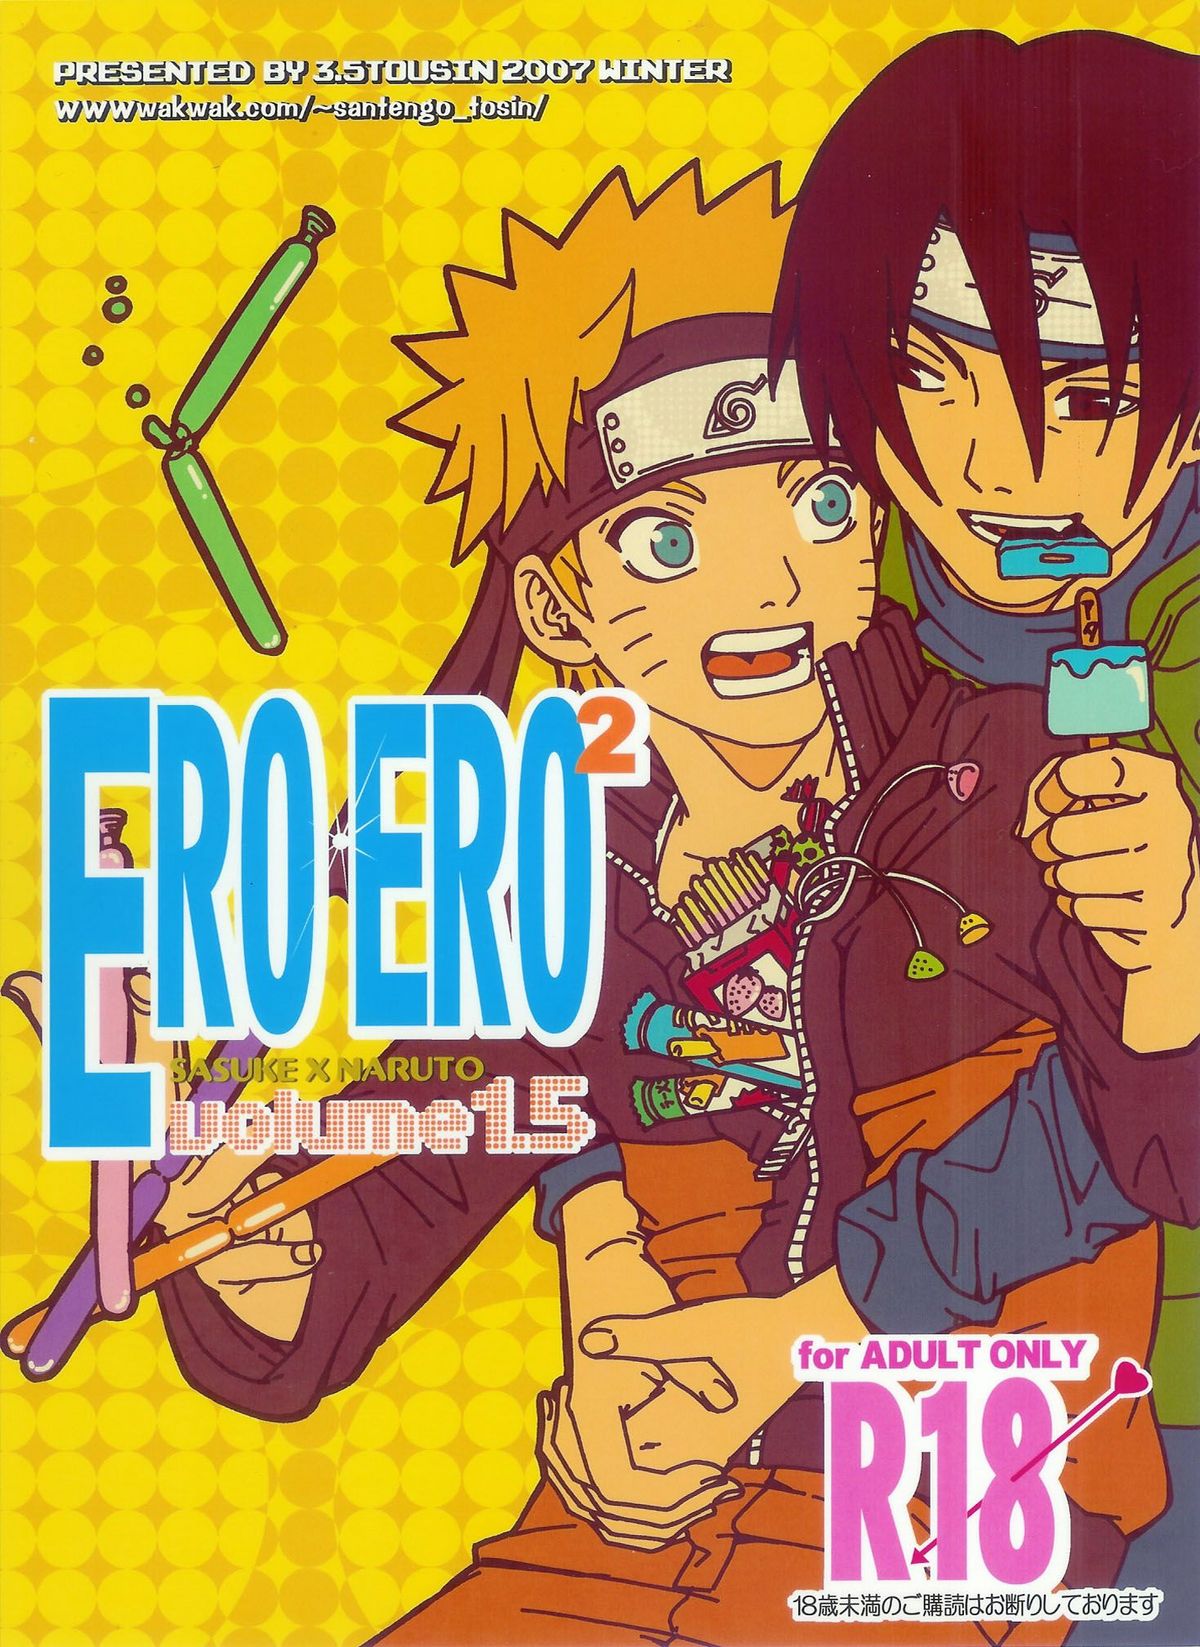 ERO ERO²: Volume 1.5  (NARUTO) [Sasuke X Naruto] YAOI -ENG- page 1 full